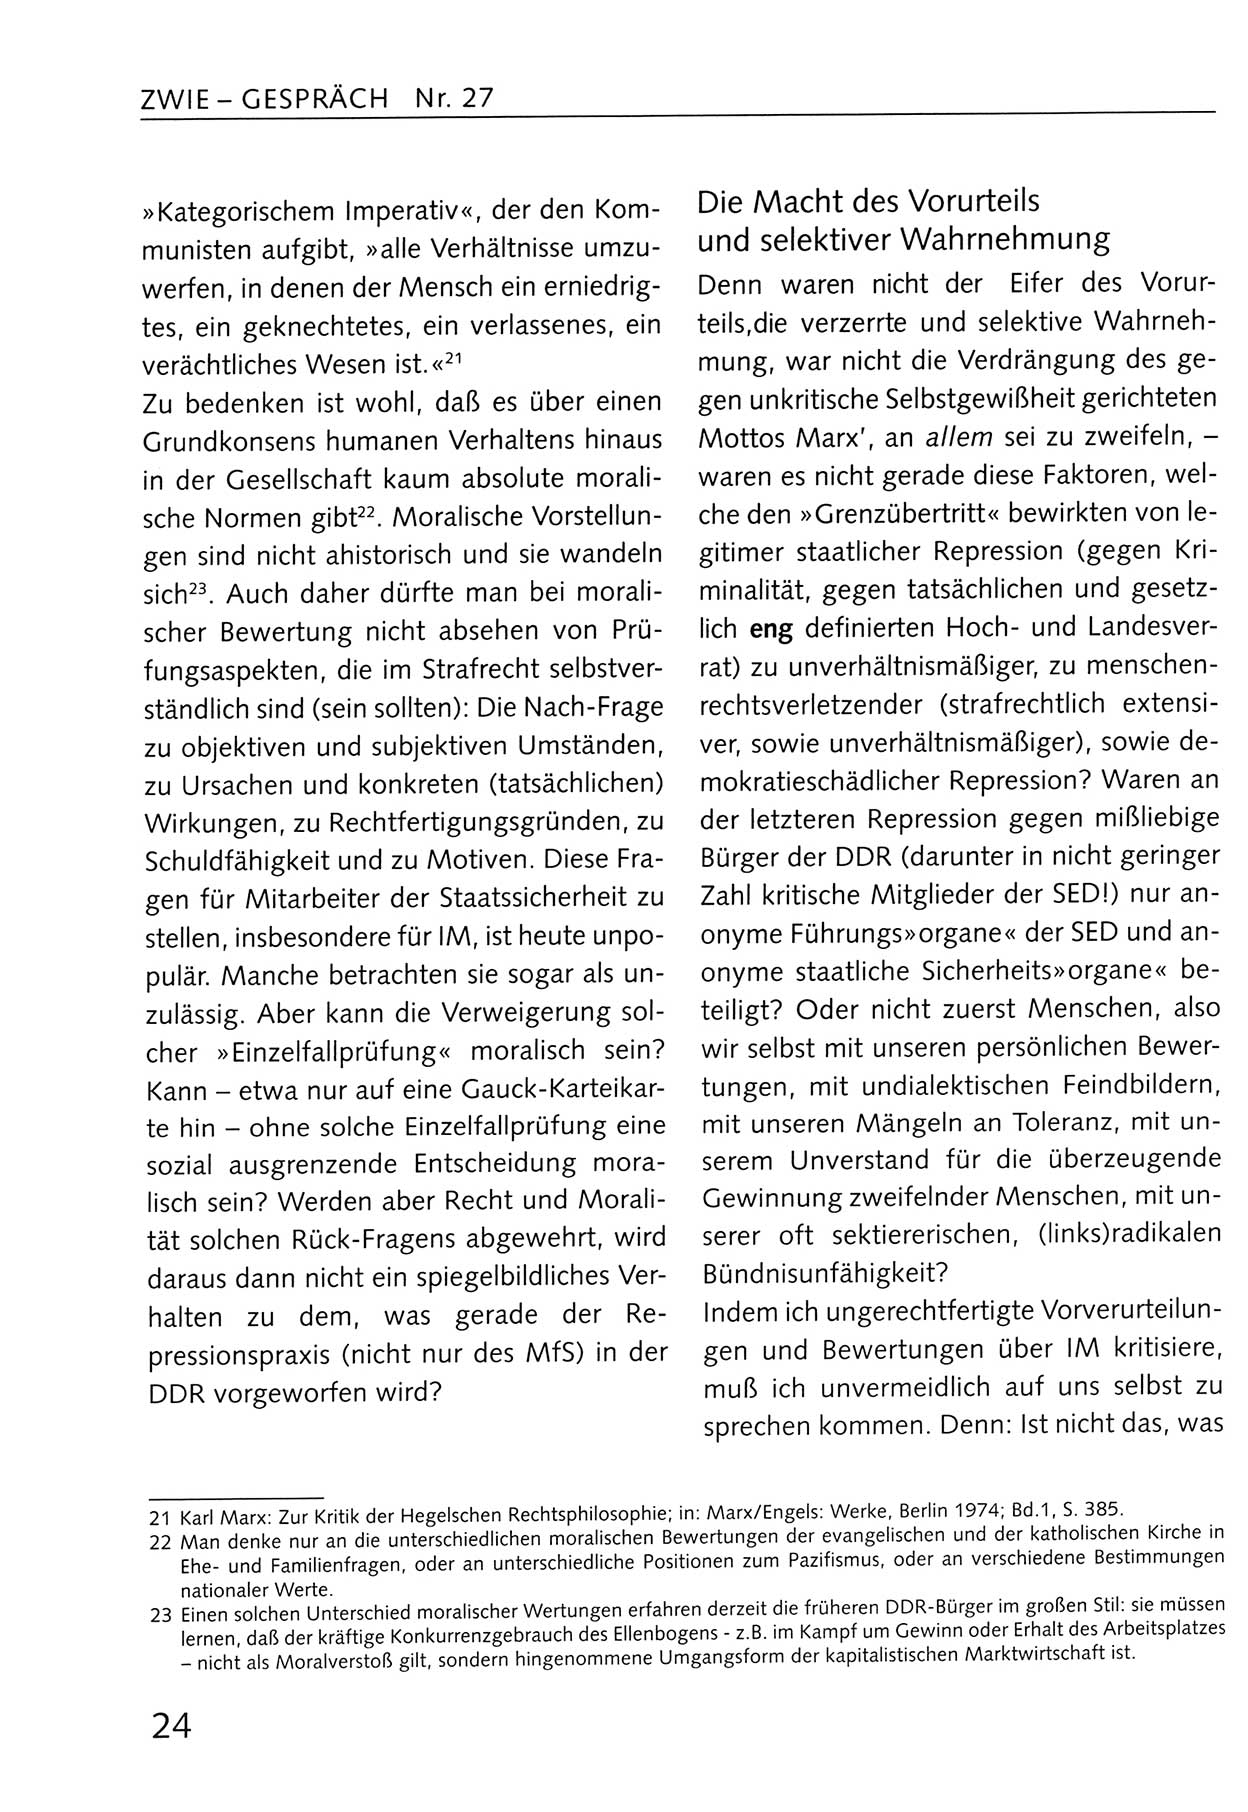 Zwie-Gespräch, Beiträge zum Umgang mit der Staatssicherheits-Vergangenheit [Deutsche Demokratische Republik (DDR)], Ausgabe Nr. 27, Berlin 1995, Seite 24 (Zwie-Gespr. Ausg. 27 1995, S. 24)